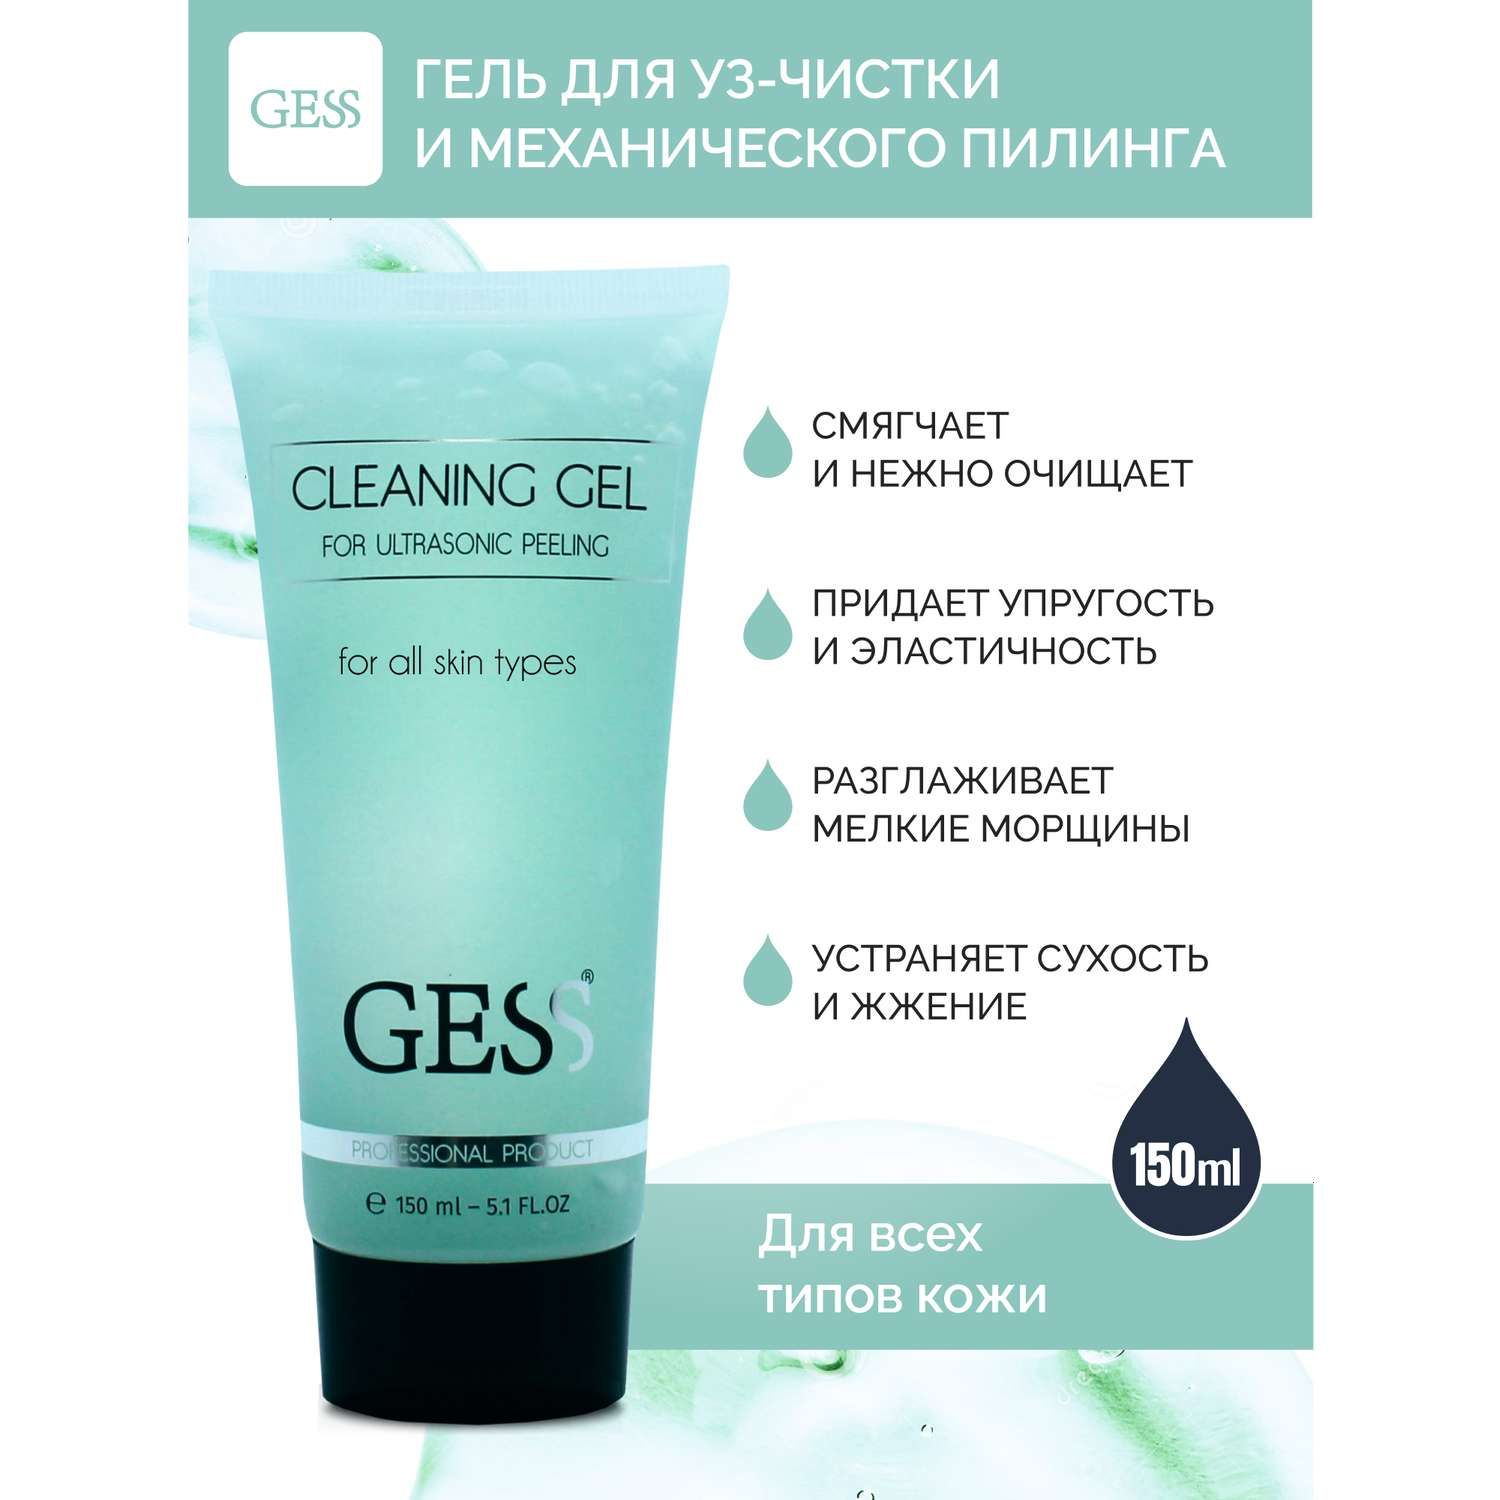 Гель для ультразвуковой чистки GESS Cleaning Gel для всех типов кожи 150 мл - фото 1